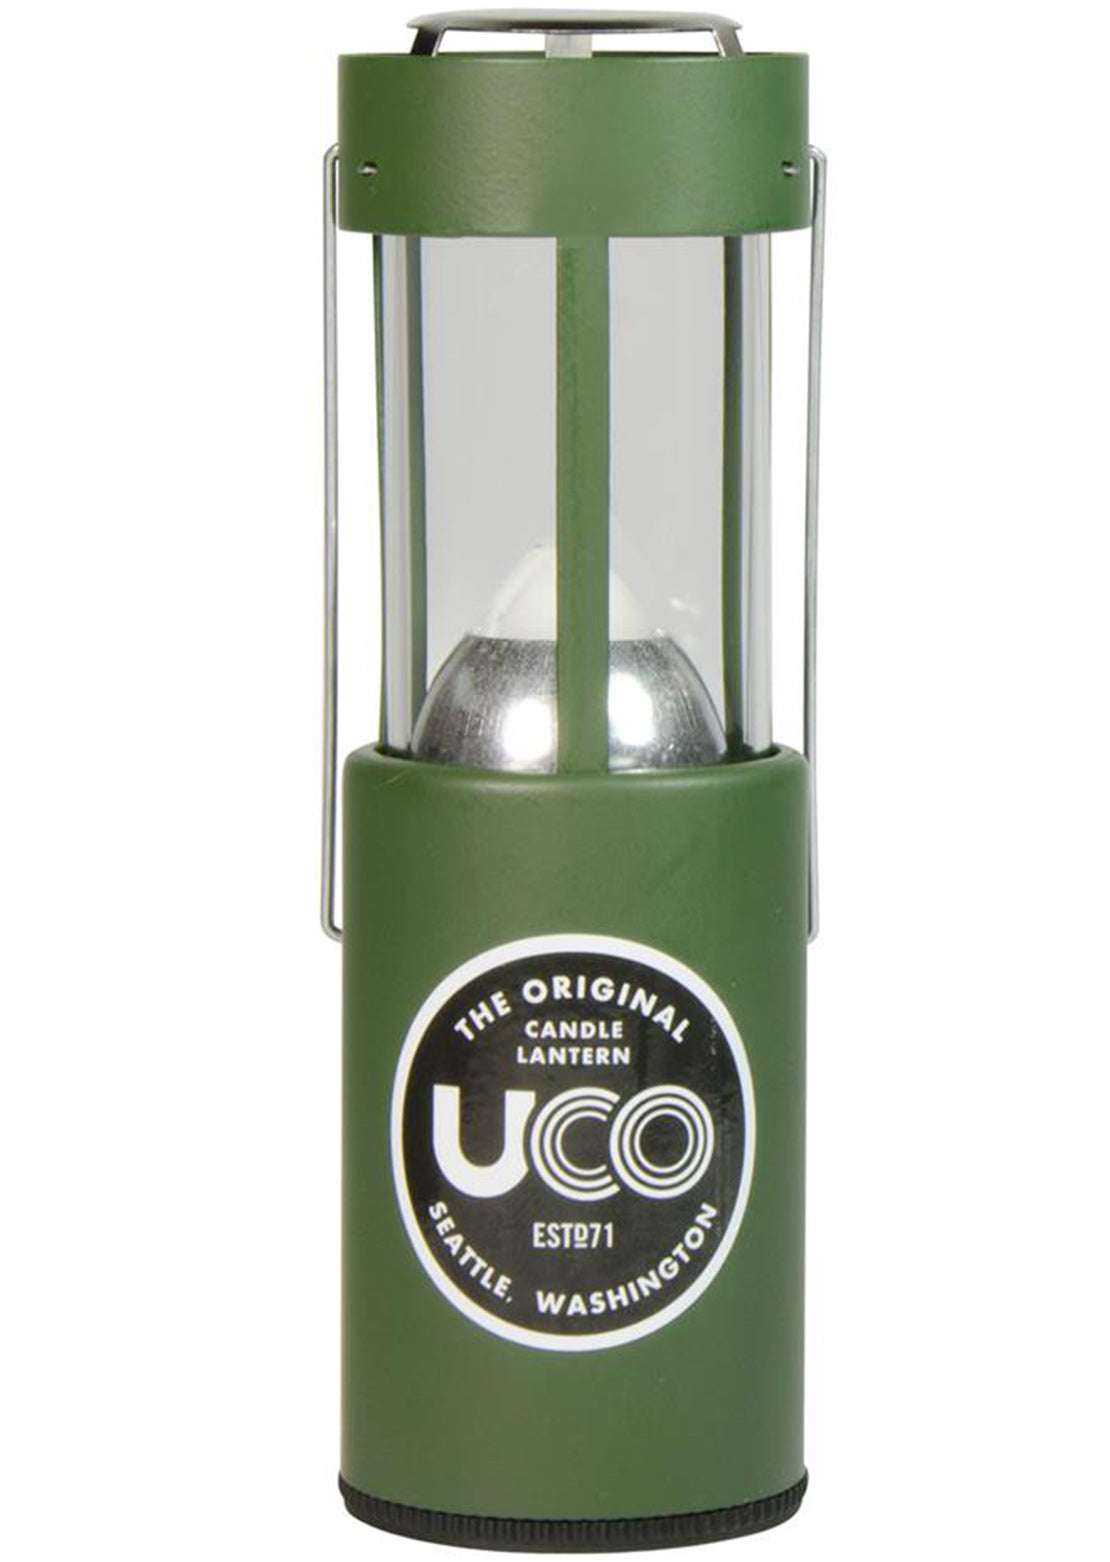 Uco Original Candle Lantern Green